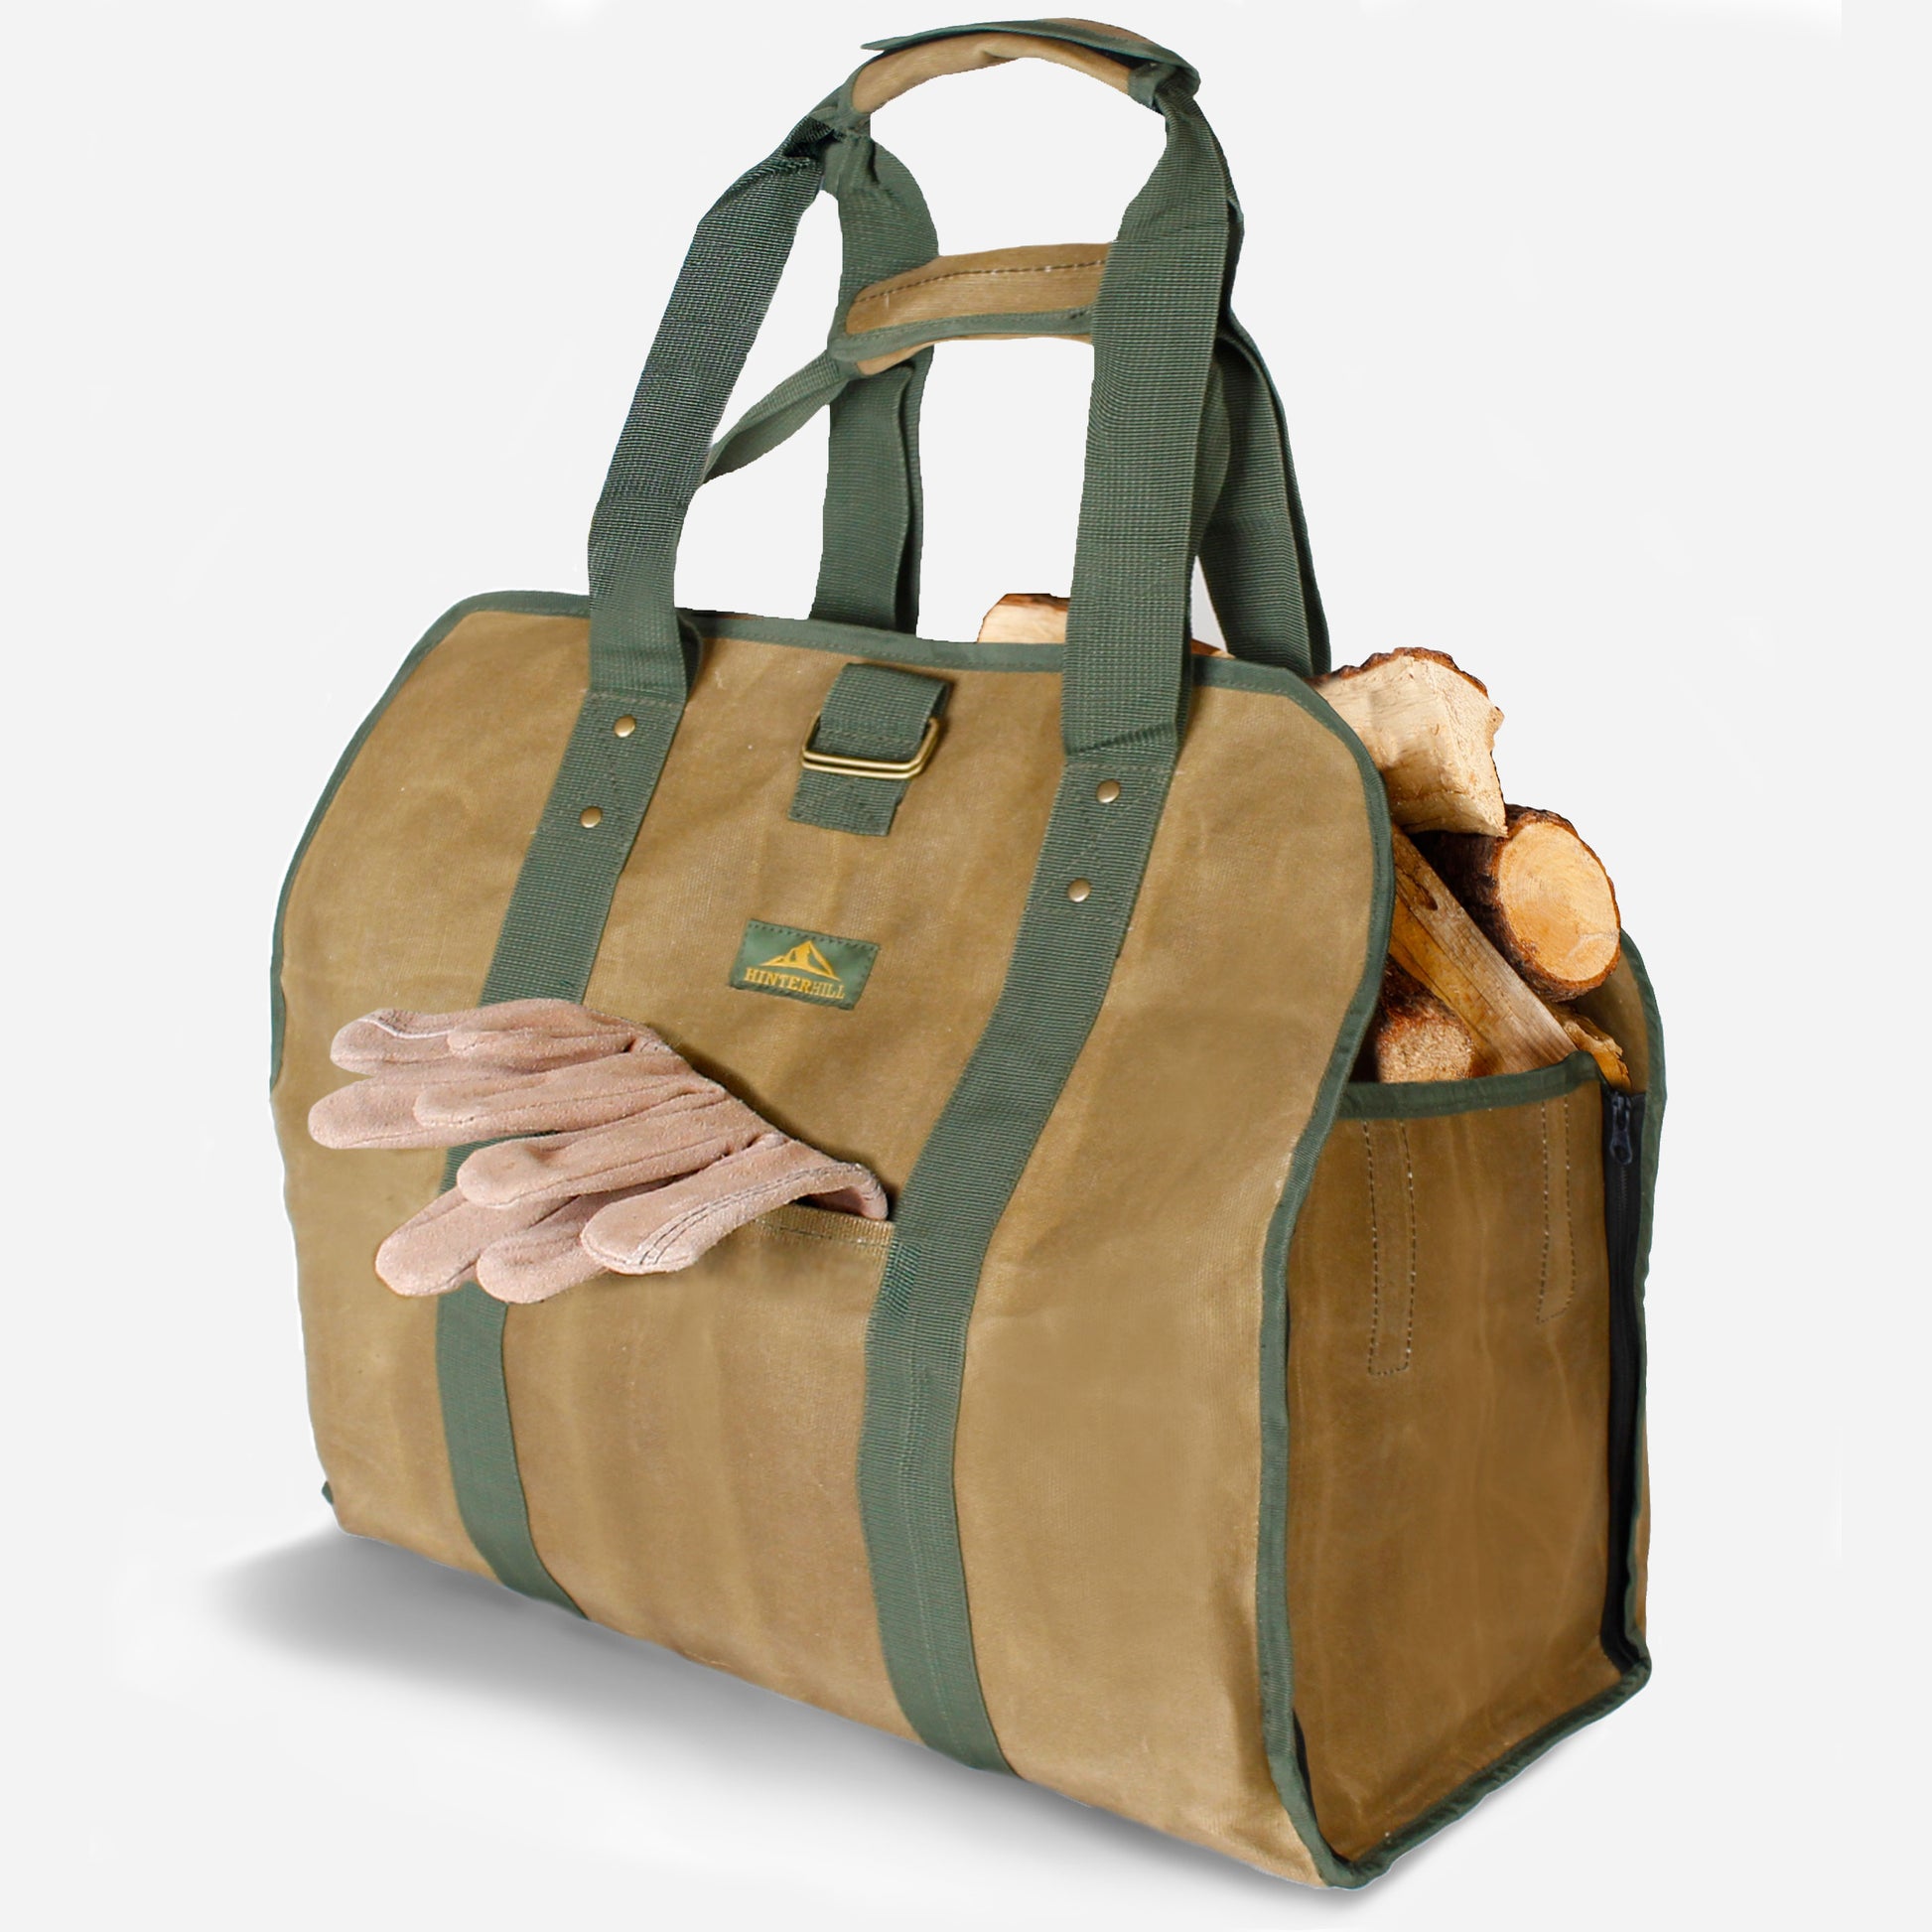 Garden Tool Tote Bag for Women -Garden Bags for Tools Garden Caddy